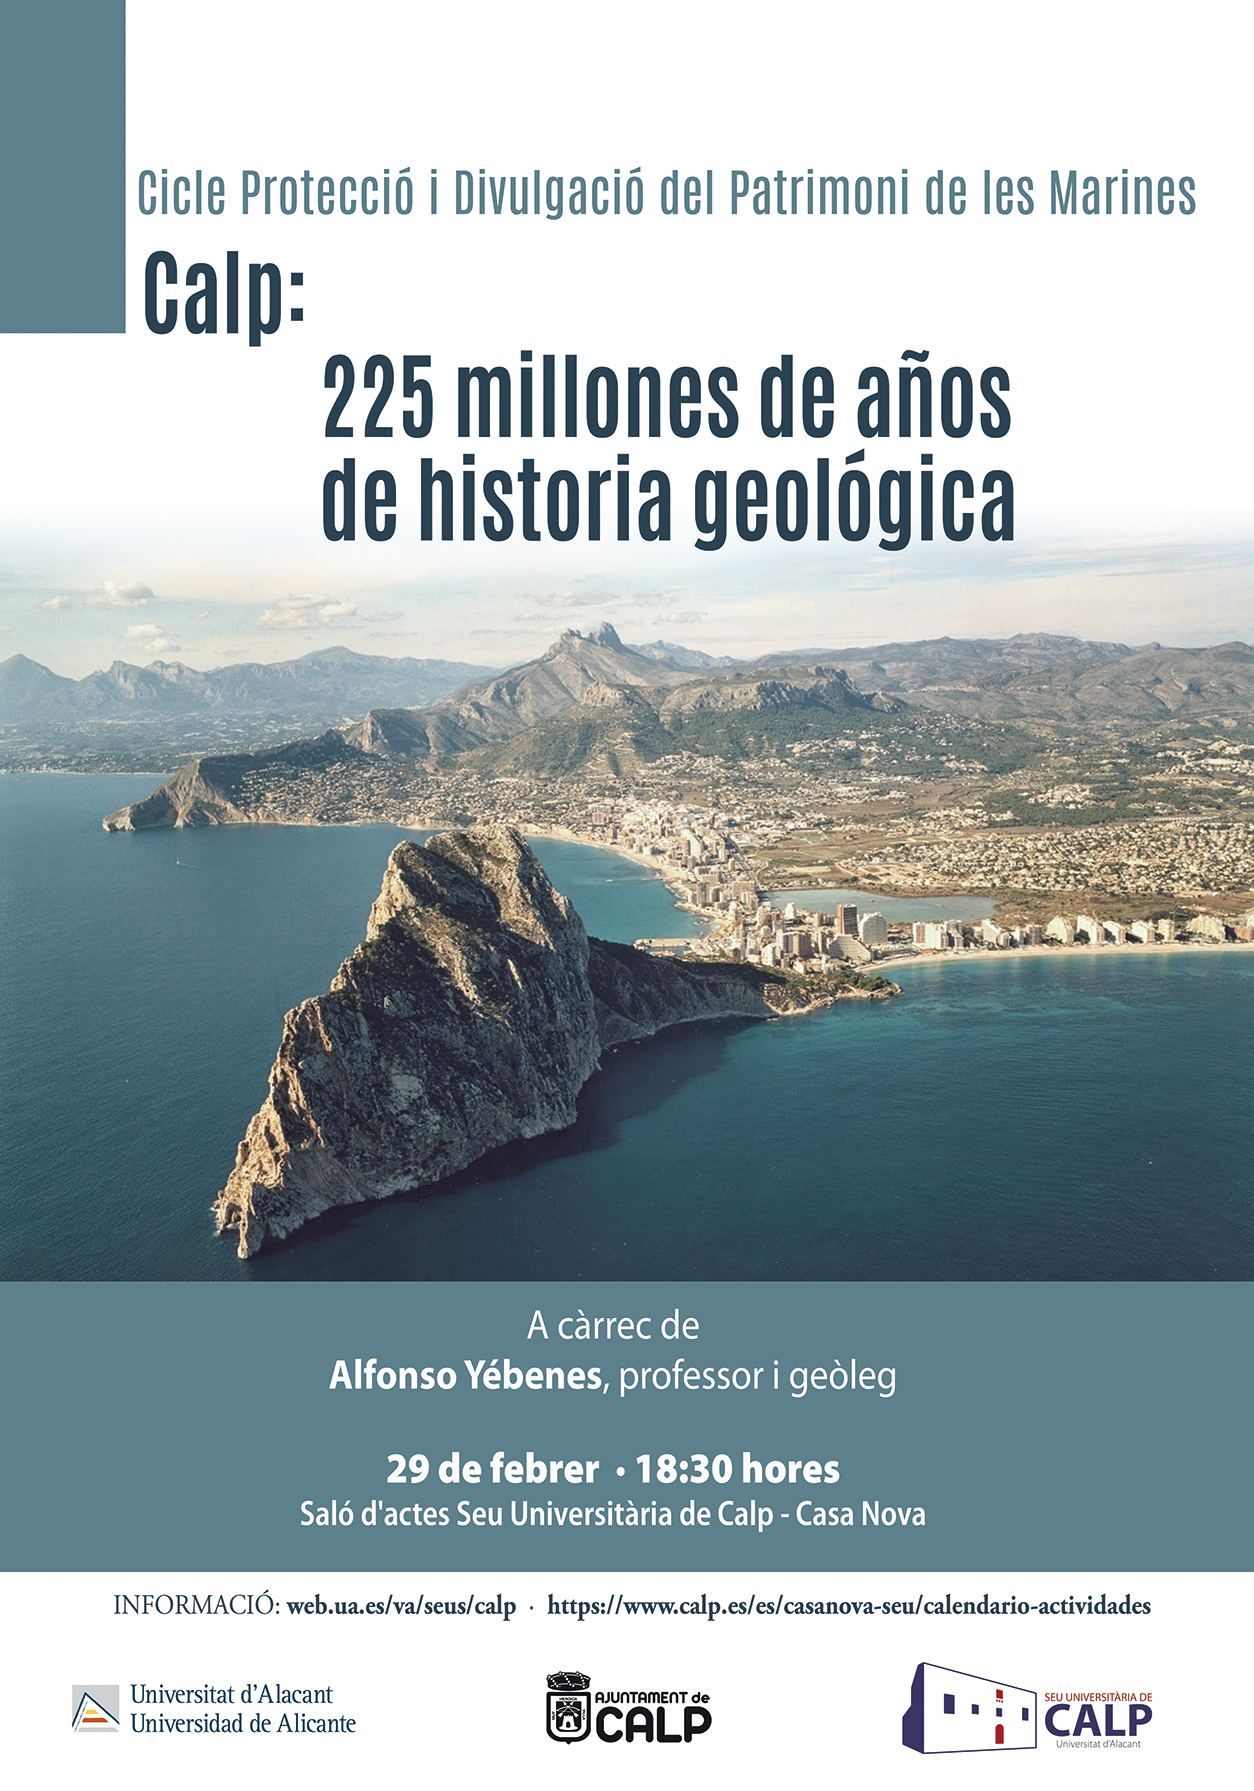 Calp: 225 millones de años de historia geológica - Conferencia